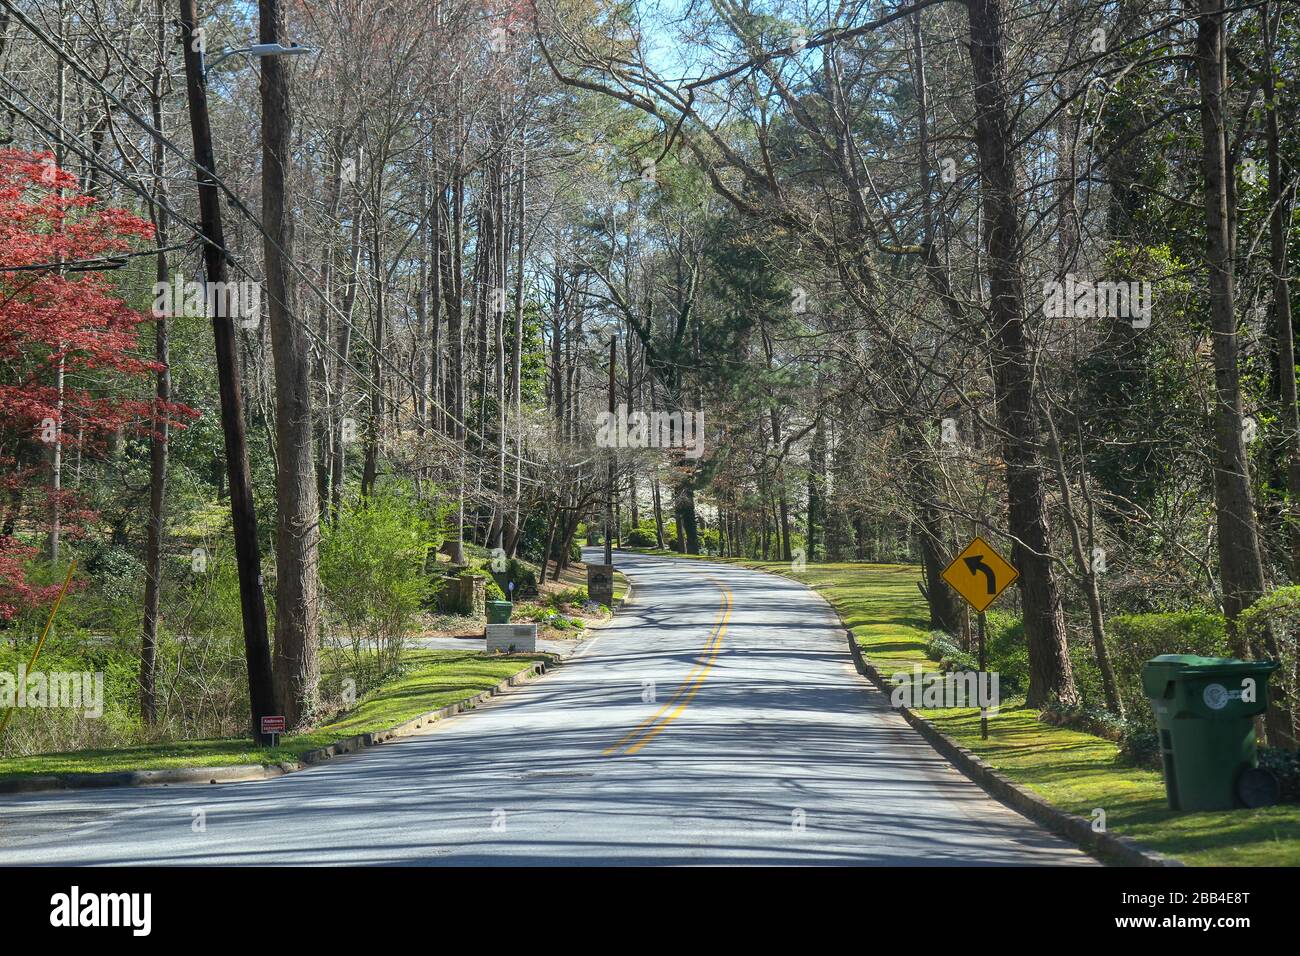 Road in a suburban area of Atlanta, Georgia, United States Stock Photo